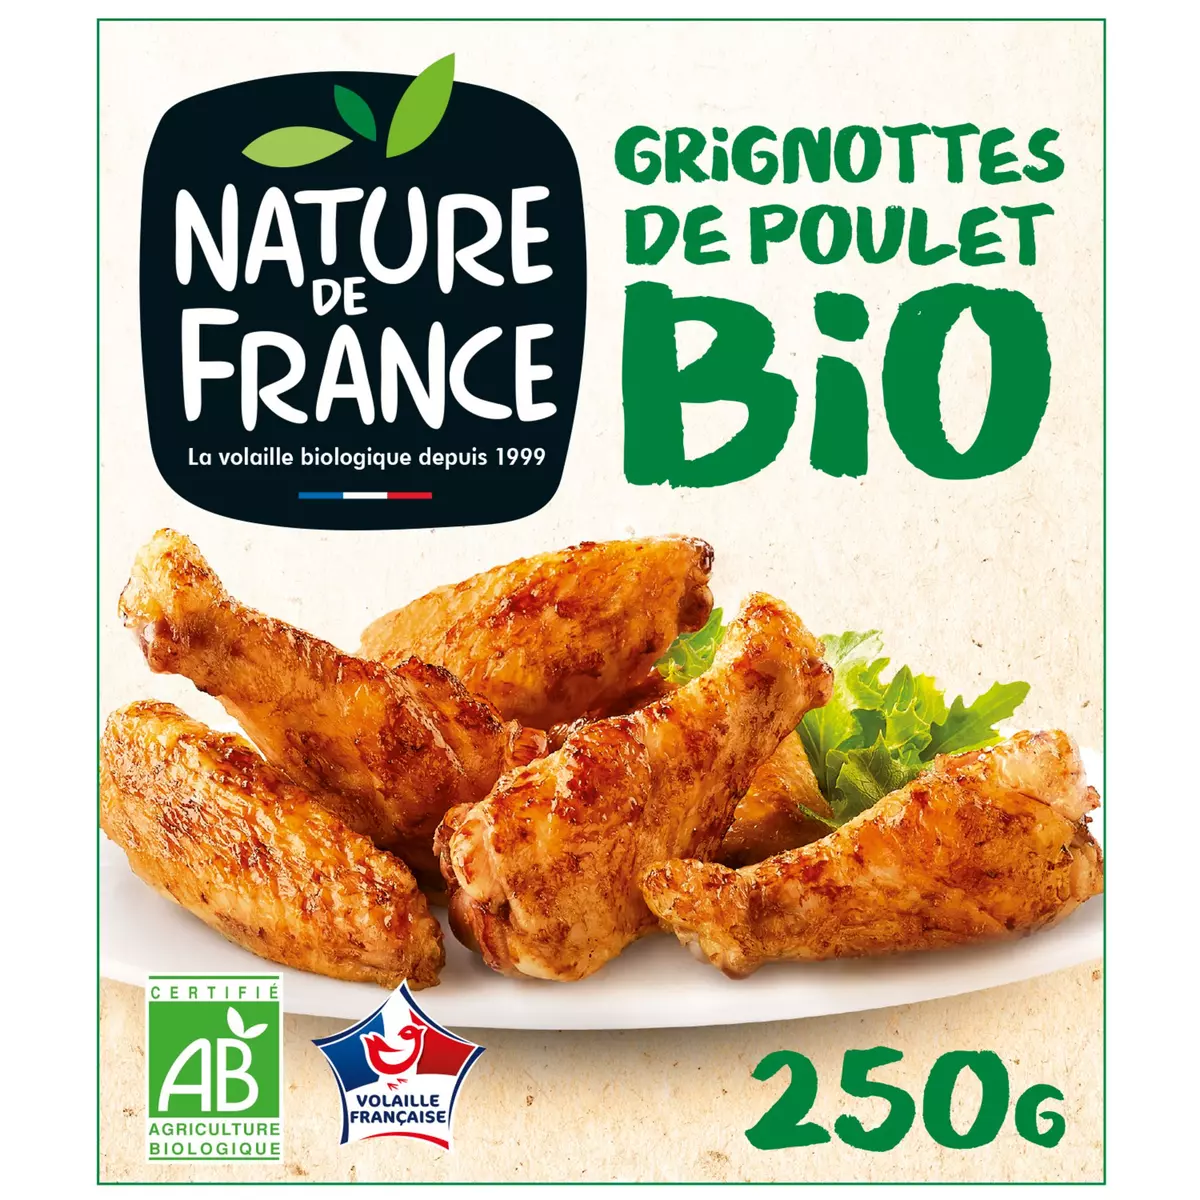 NATURE DE FRANCE Grignottes de poulet rôti bio 1 à 2 personnes 250g